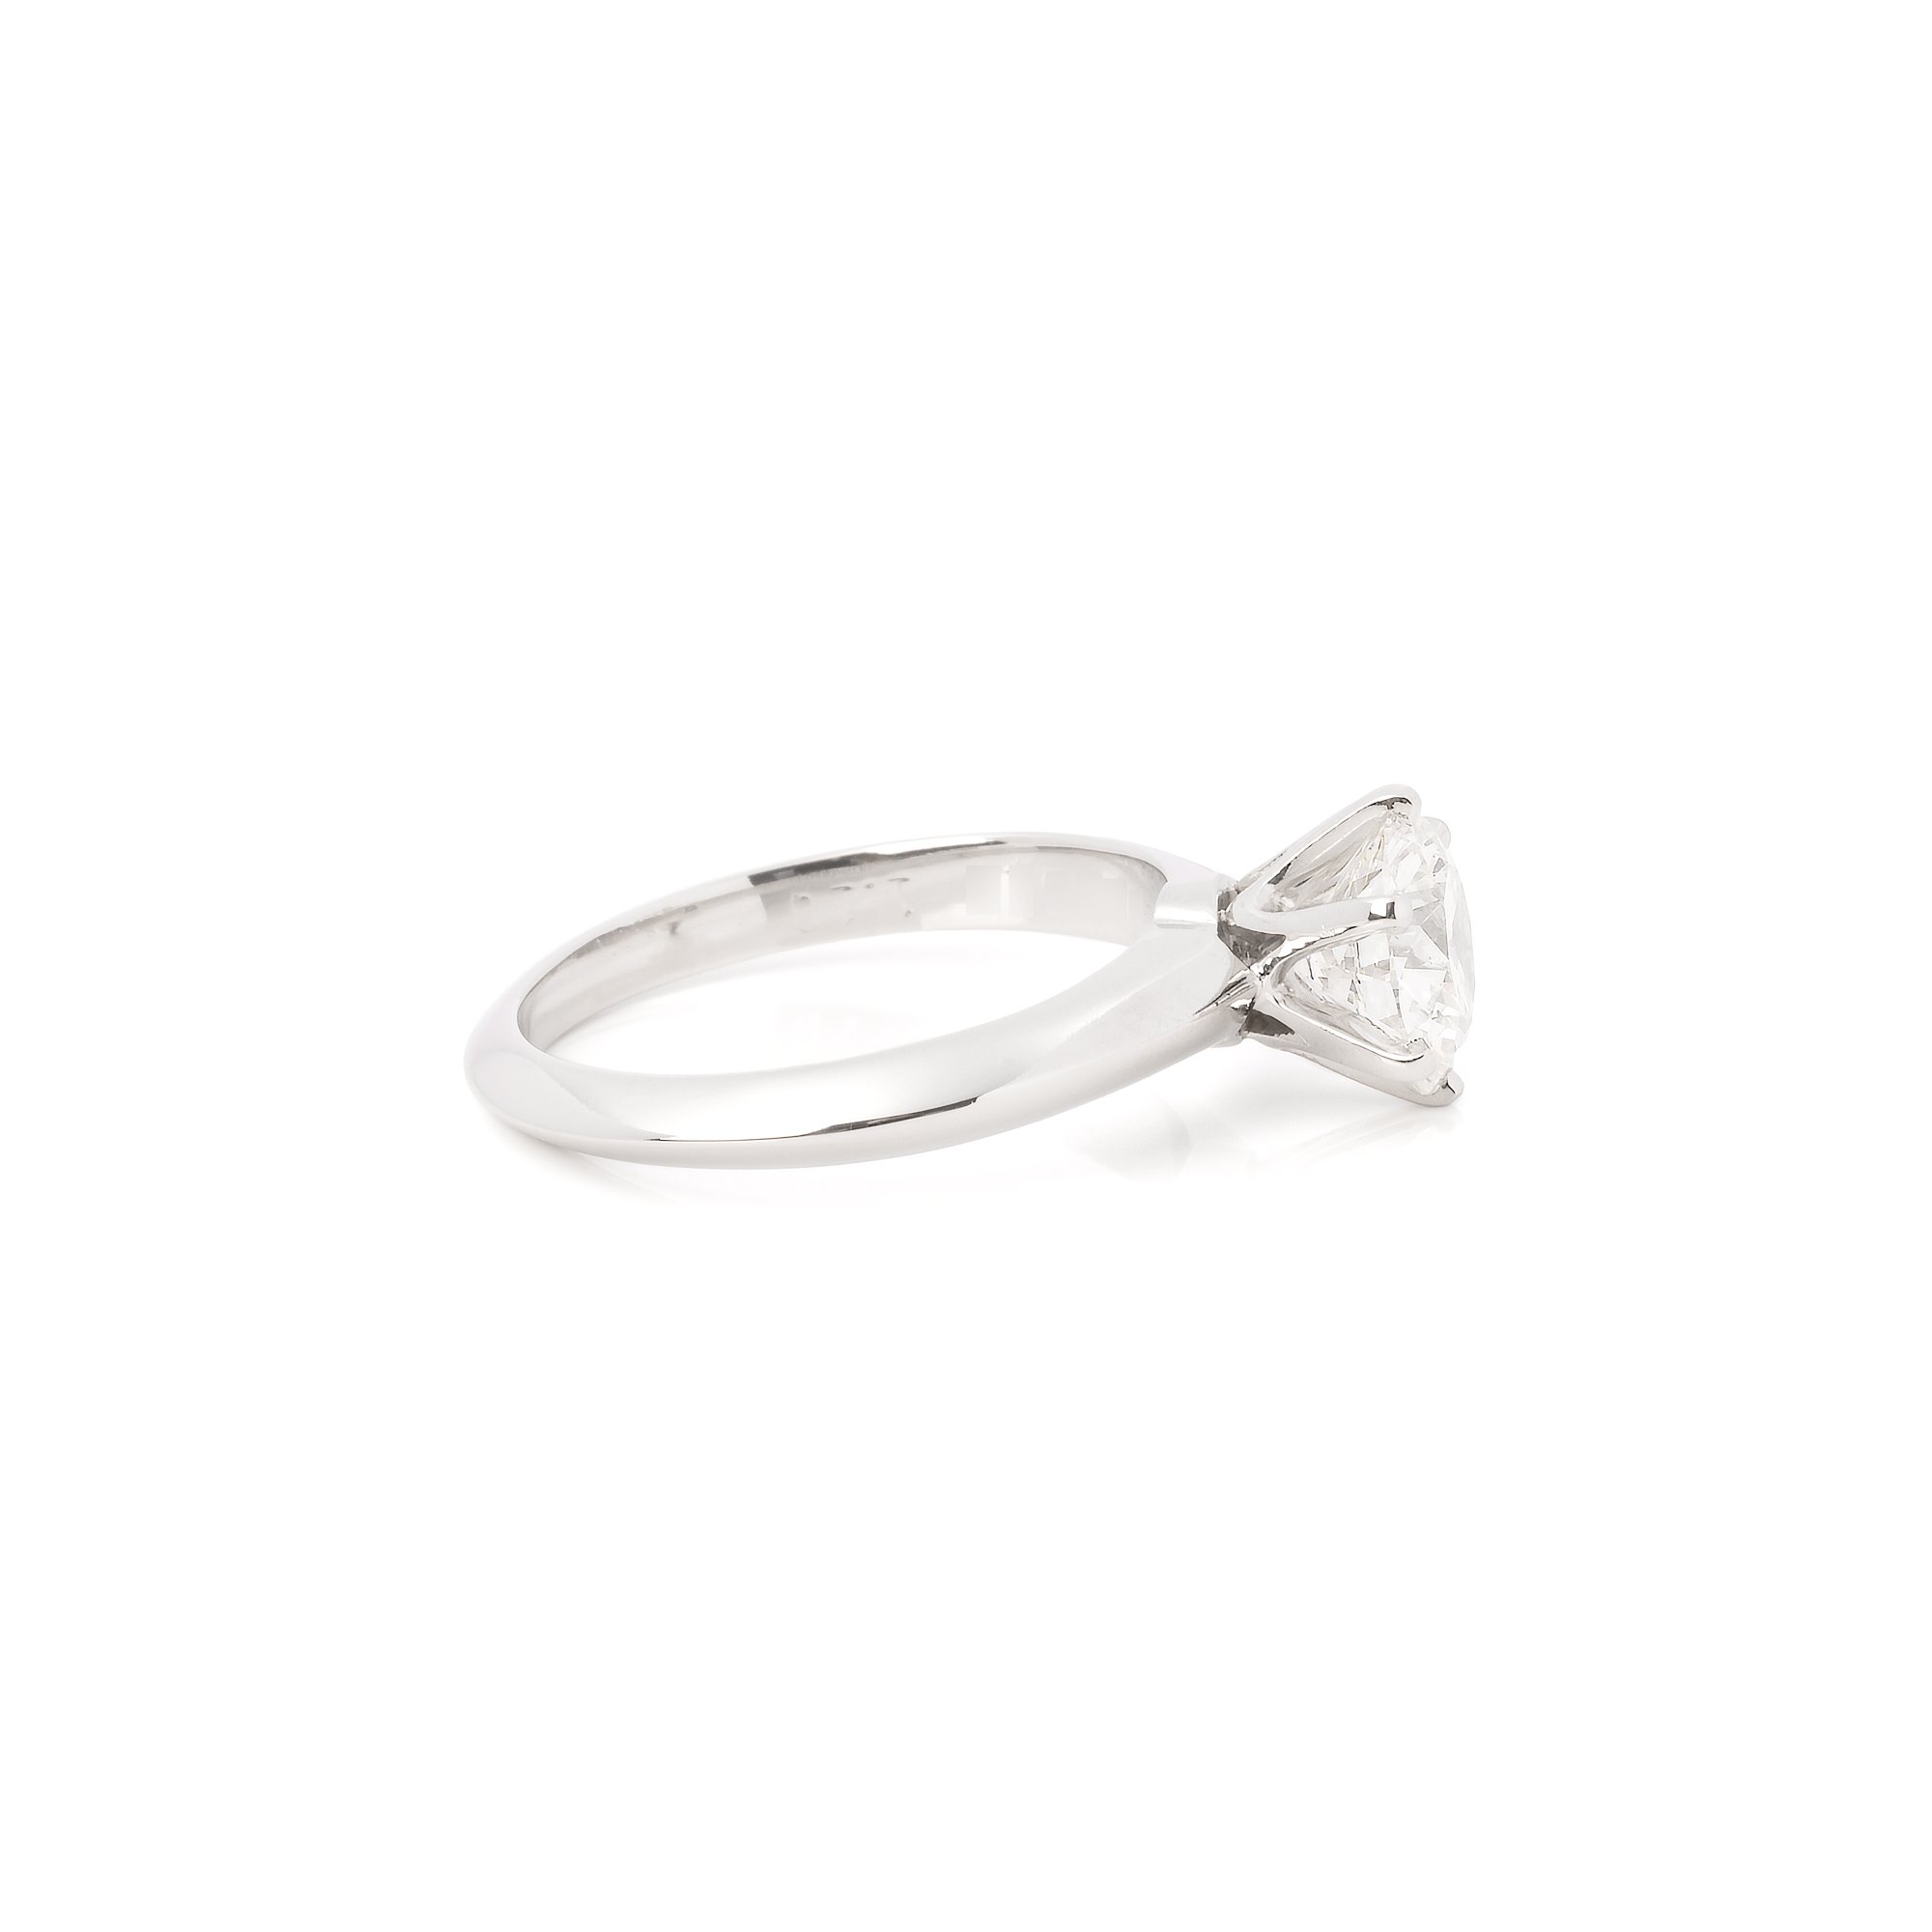 Tiffany & Co. Round Brilliant Cut 1.1ct Diamond Solitaire Ring